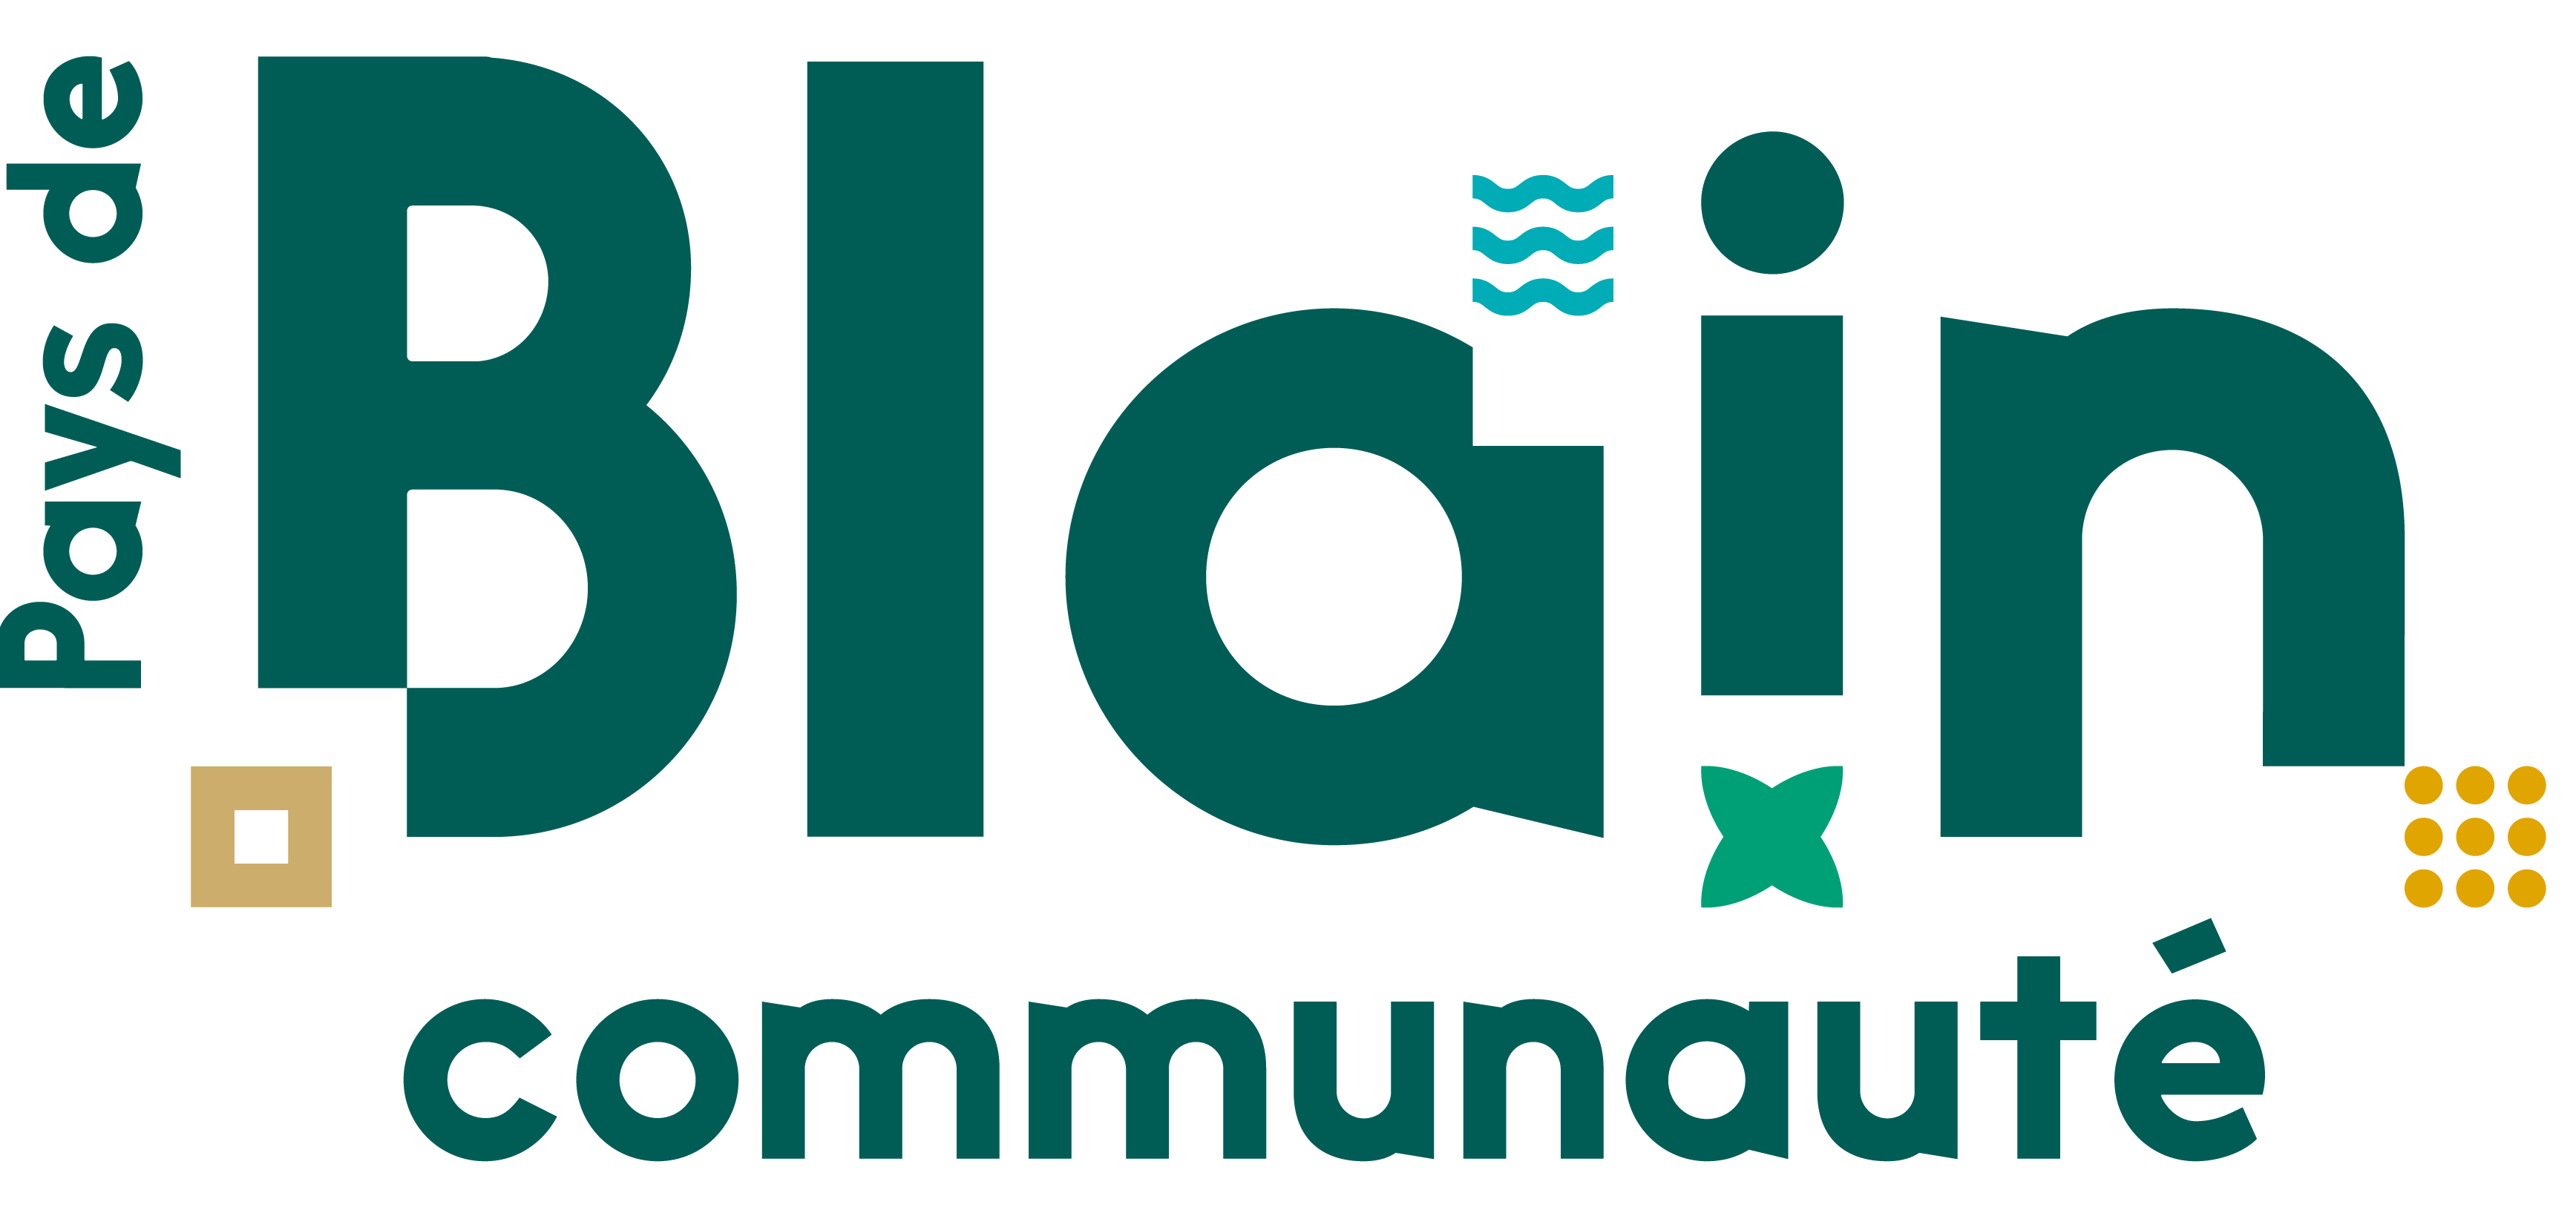 Communauté de Communes de la Région de Blain (Pays de Blain) partenaire de la Mission Locale Nord Atlantique